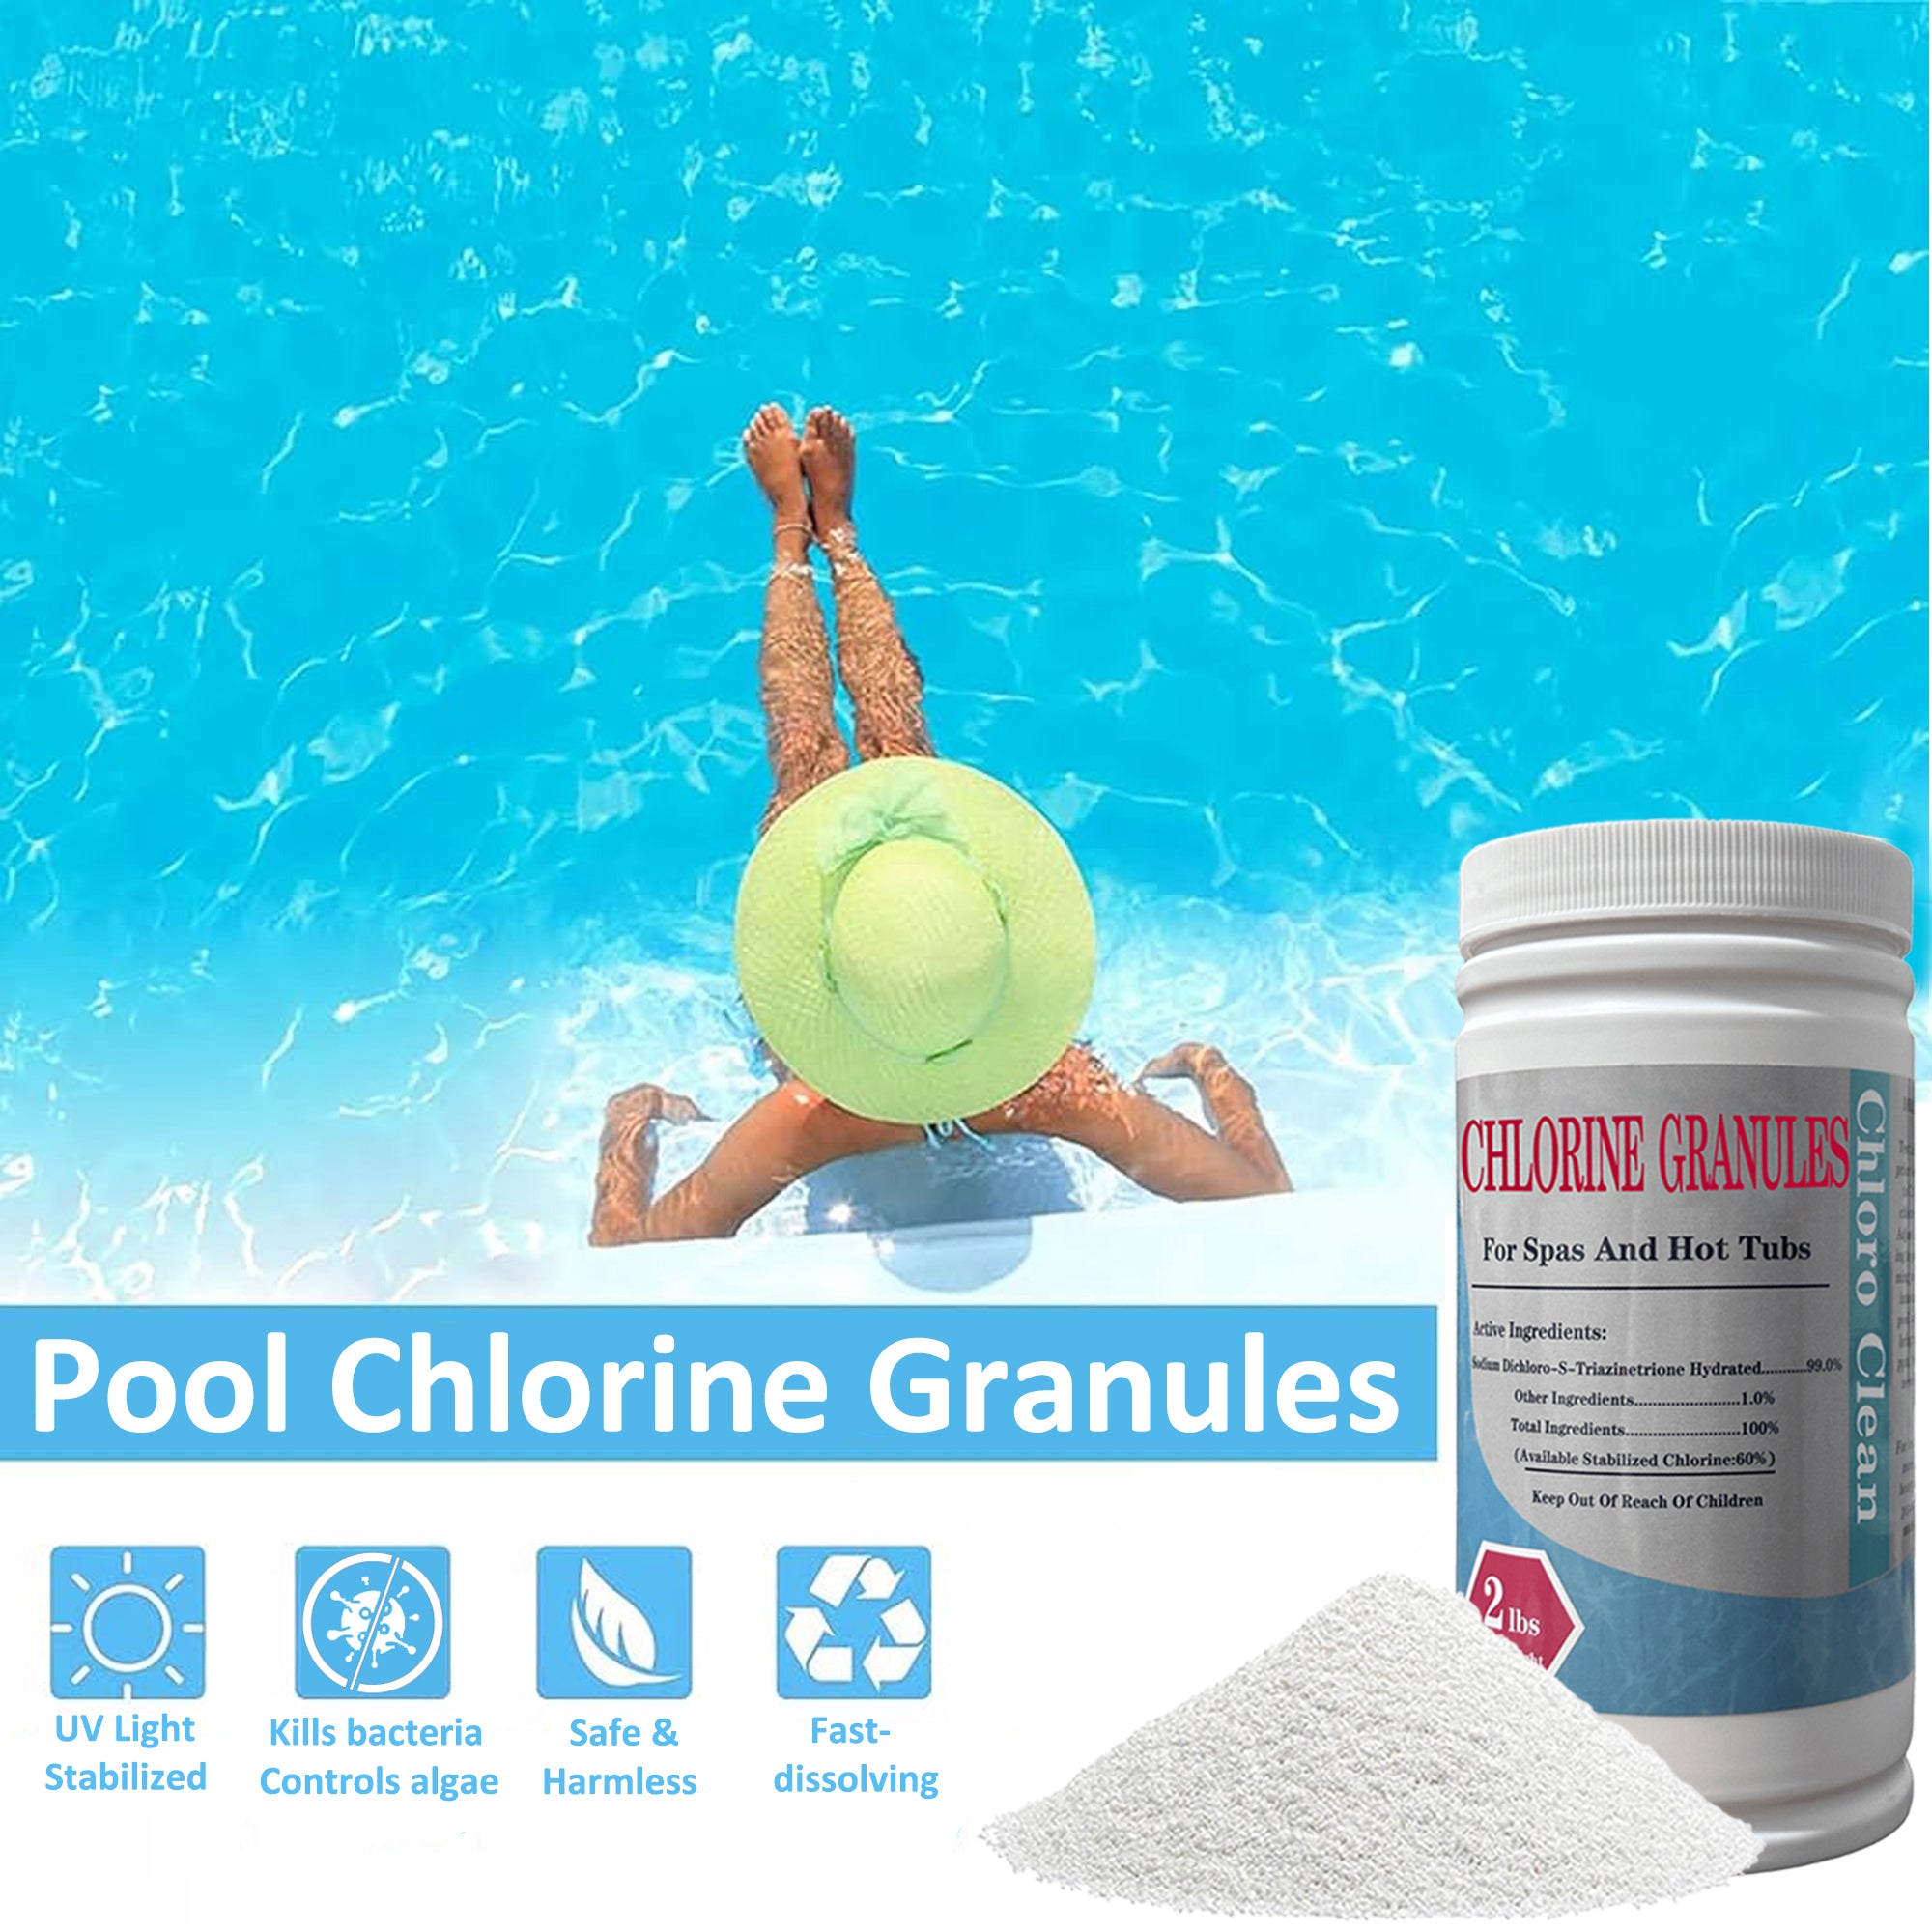 Pool Chlorine Granules